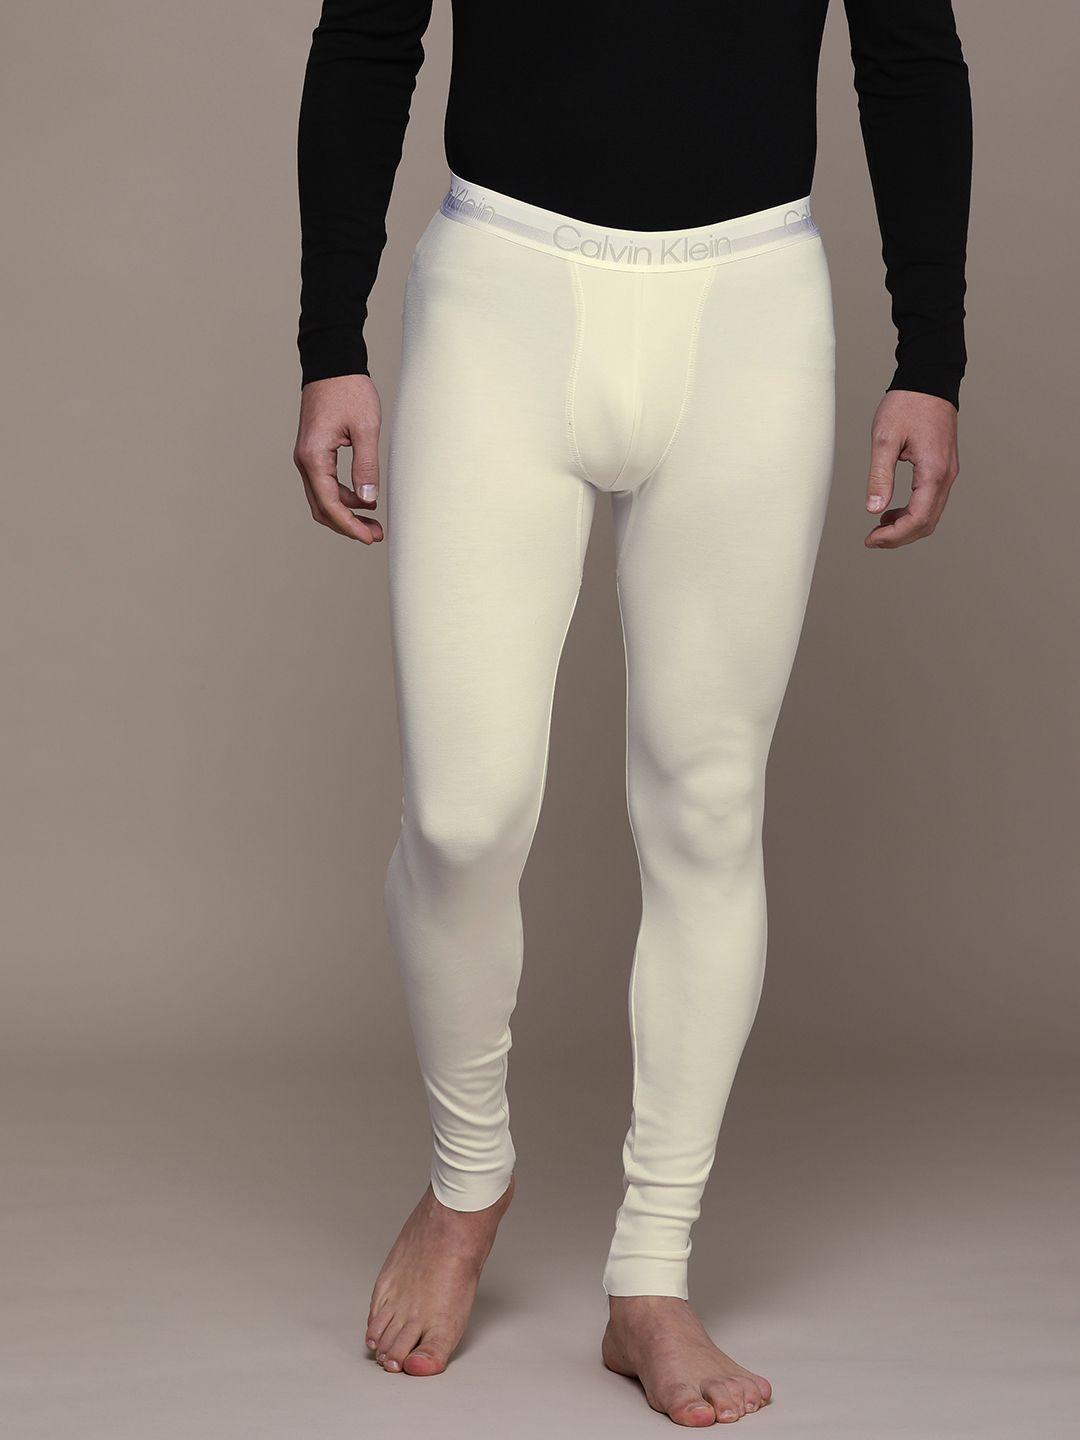 calvin-klein-underwear-men-off-white-solid-lounge-pants